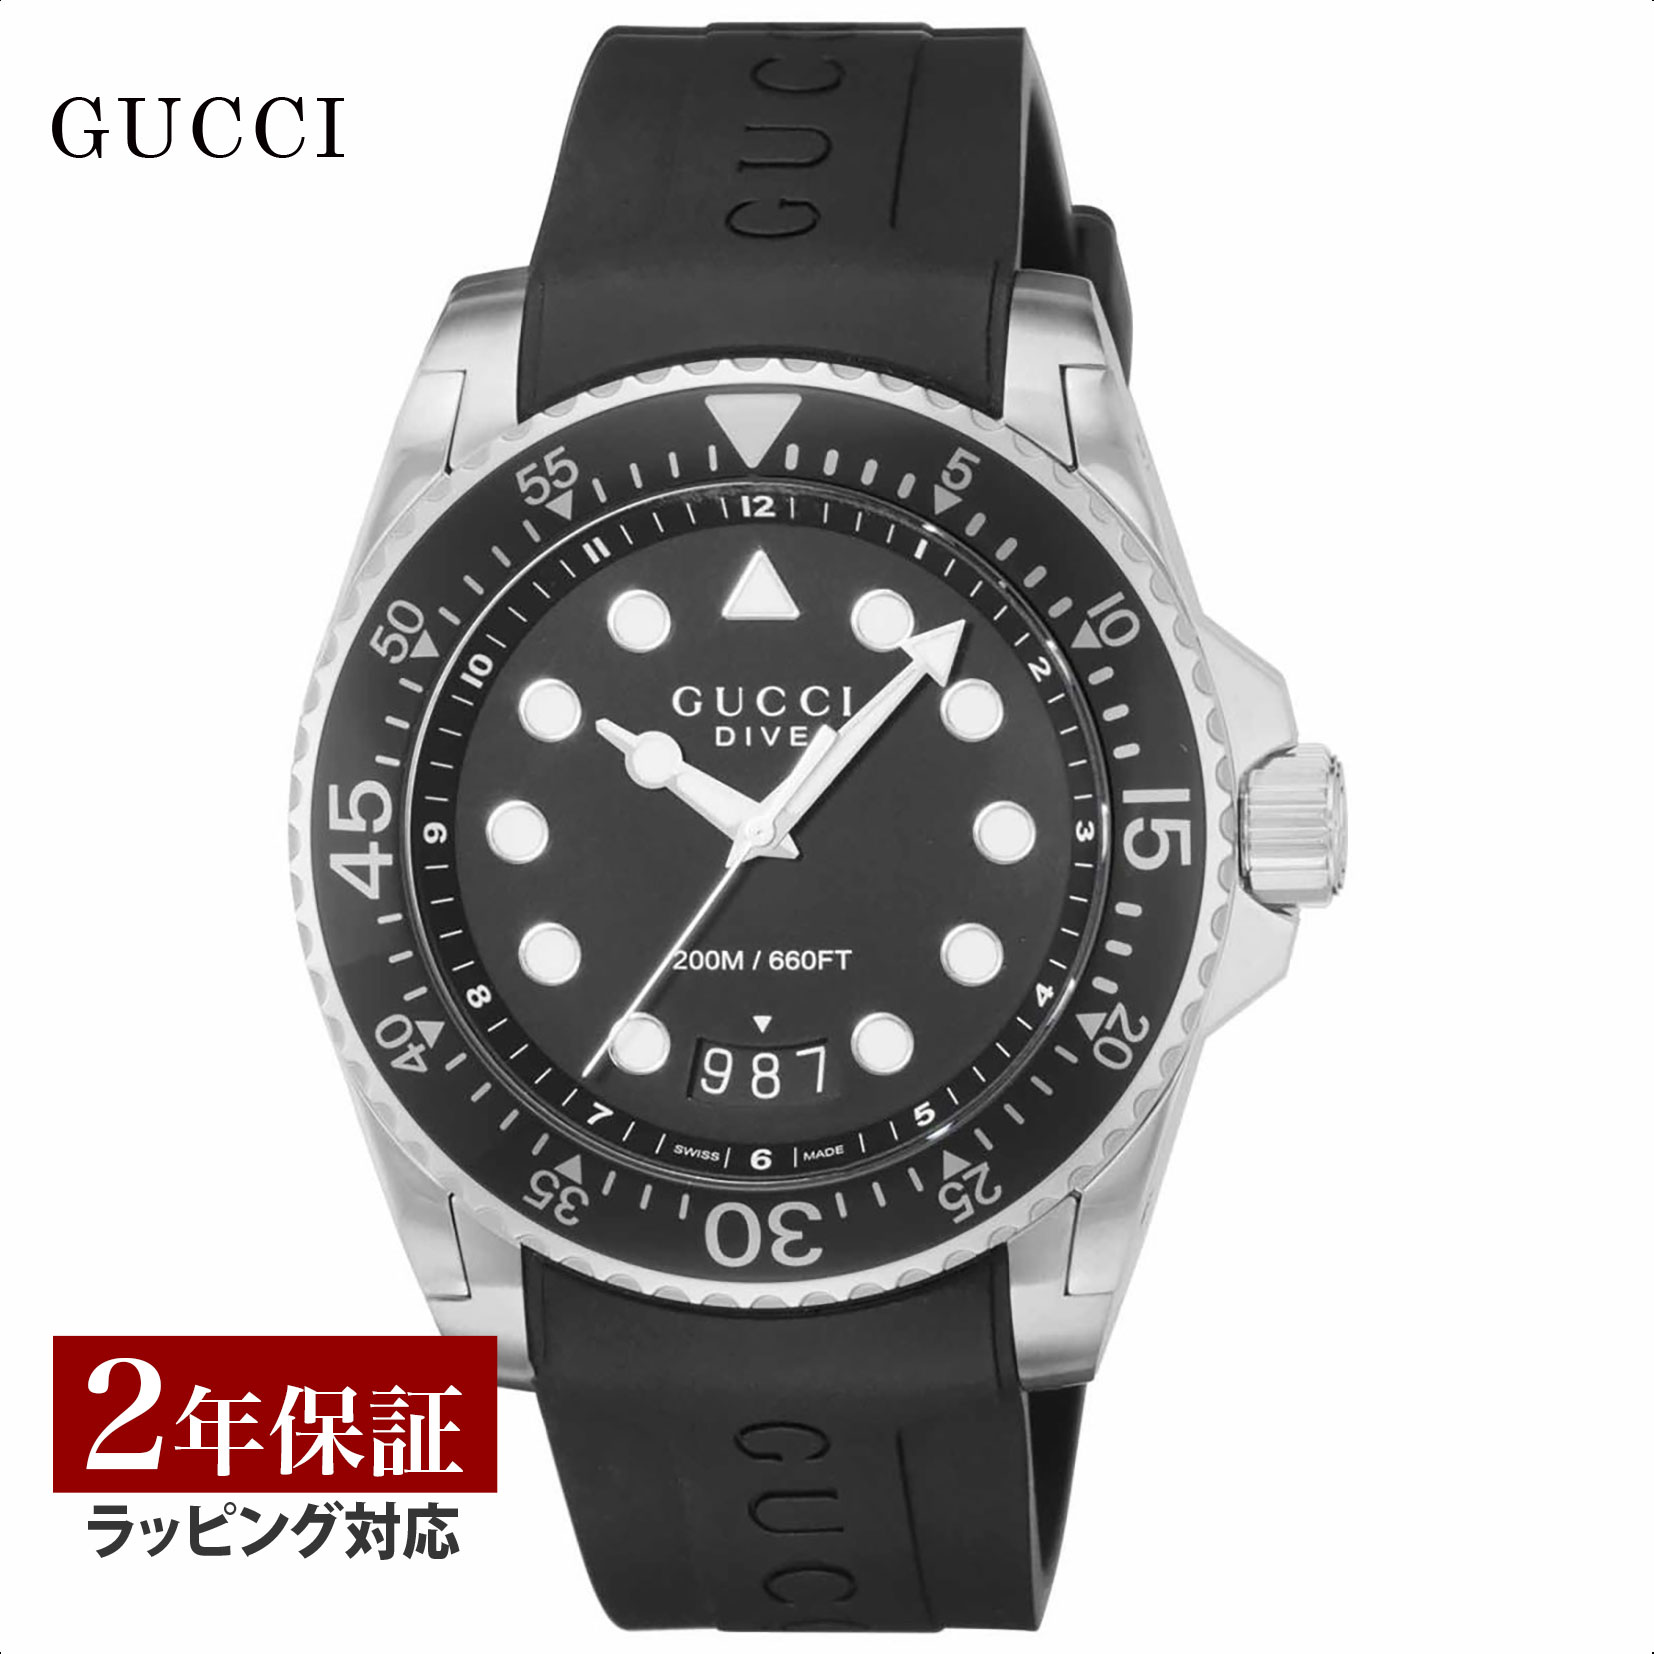 【当店限定】 グッチ GUCCI メンズ 時計 DIVE ダイブ クォーツ ブラック YA136204B 時計 腕時計 高級腕時計 ブランド画像